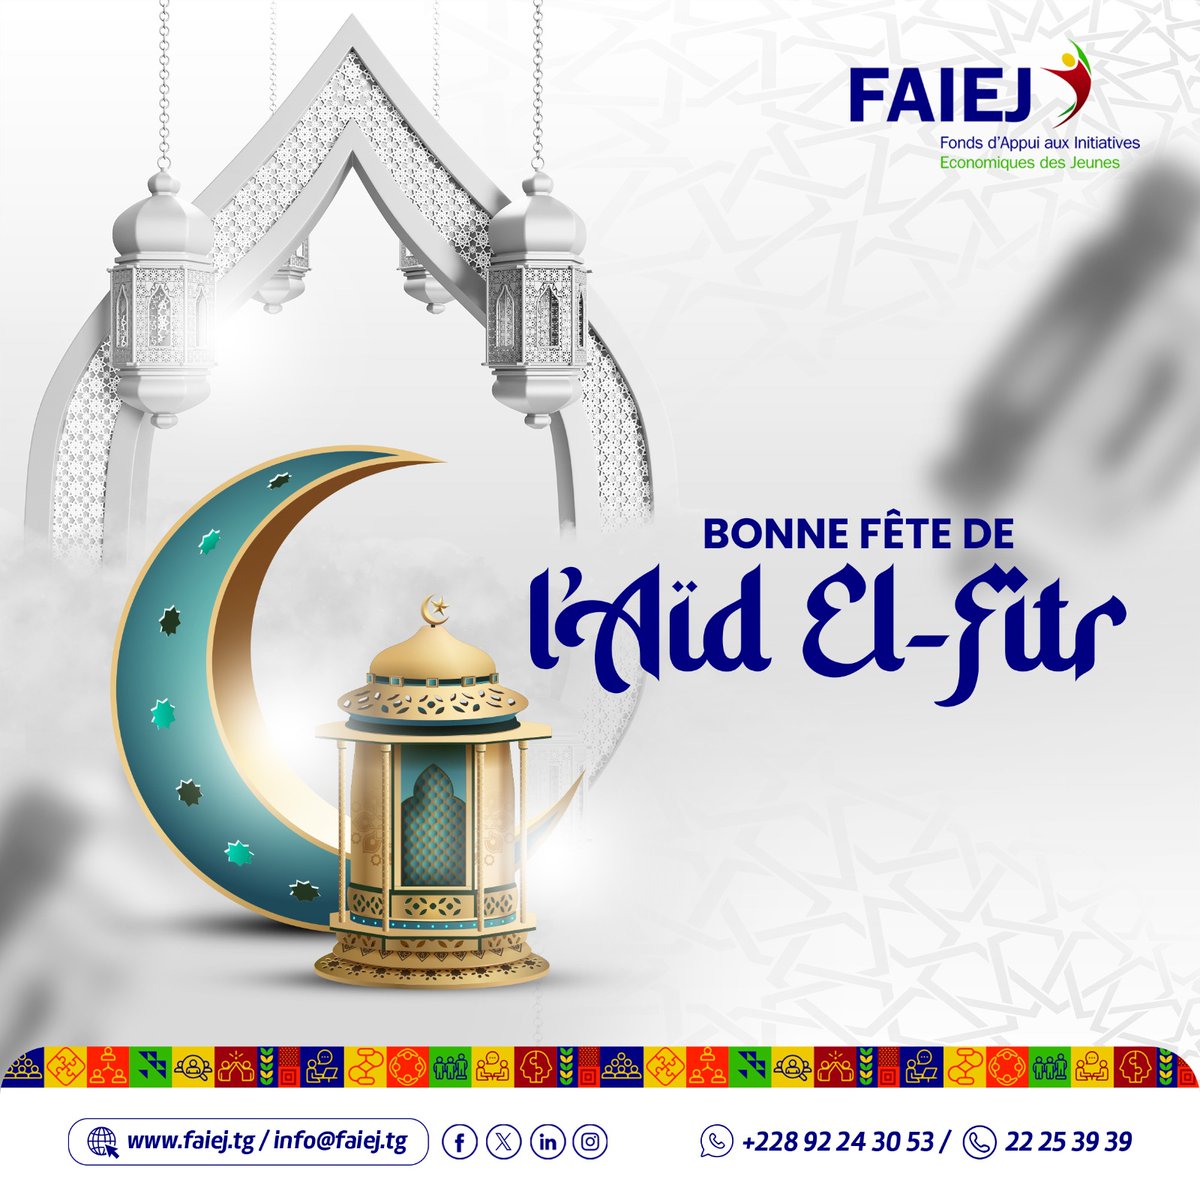 Bonne fête de Ramadan à tous nos frères et soeurs musulmans. Aid Moubarak. #FAIEJ #Ramadan #Union #Paix